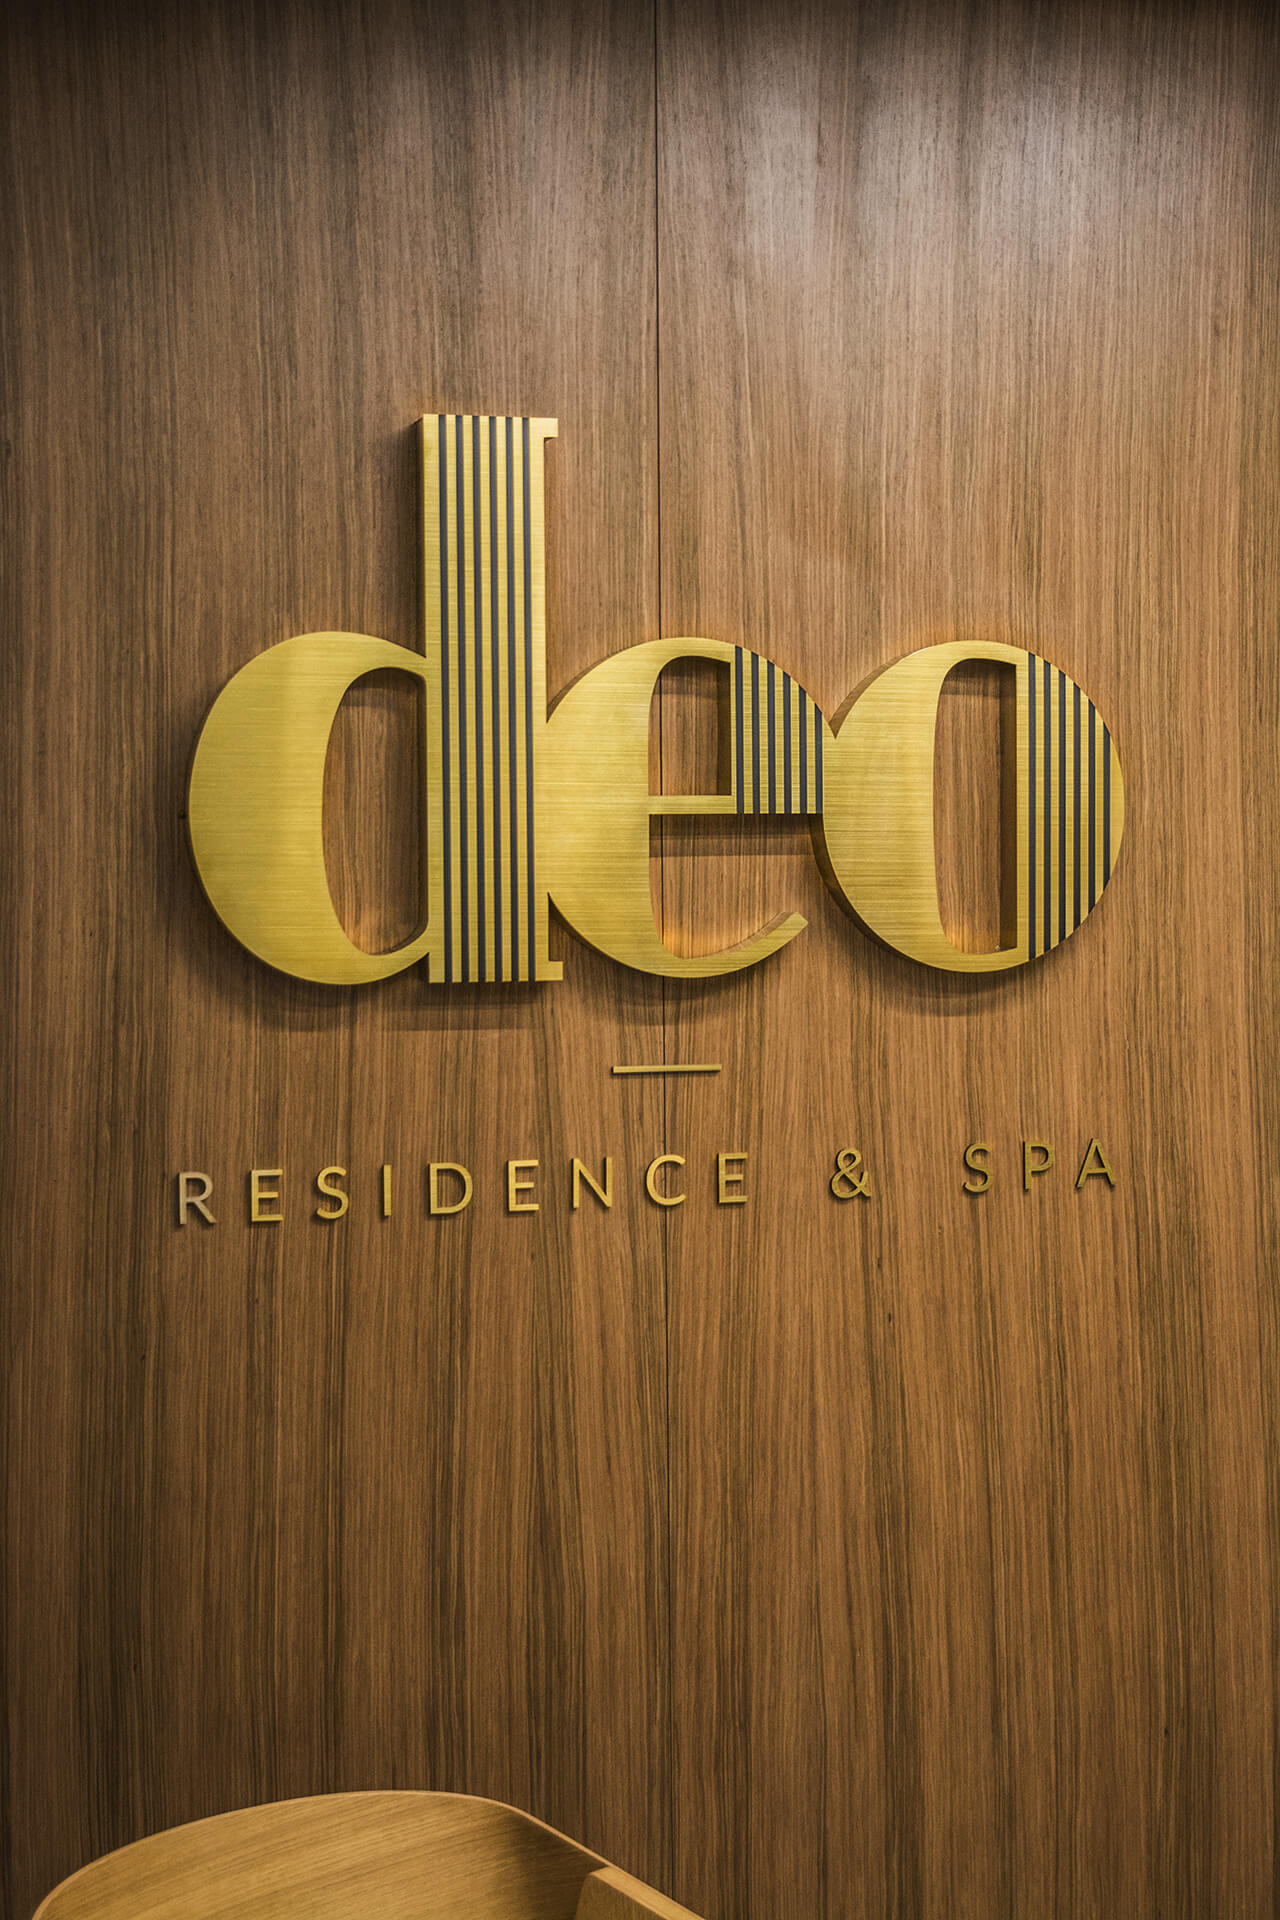 deo residence deo hotel spa - deo-residentie-belettering-van-massief-staal-geborstelde-belettering-over-de-ingang-van-het-kantoor-gebouw-belettering-op-hoogte-aan-de-muur-belettering-op-planken-belettering-op-de-dekken-logo-firma-gdansk